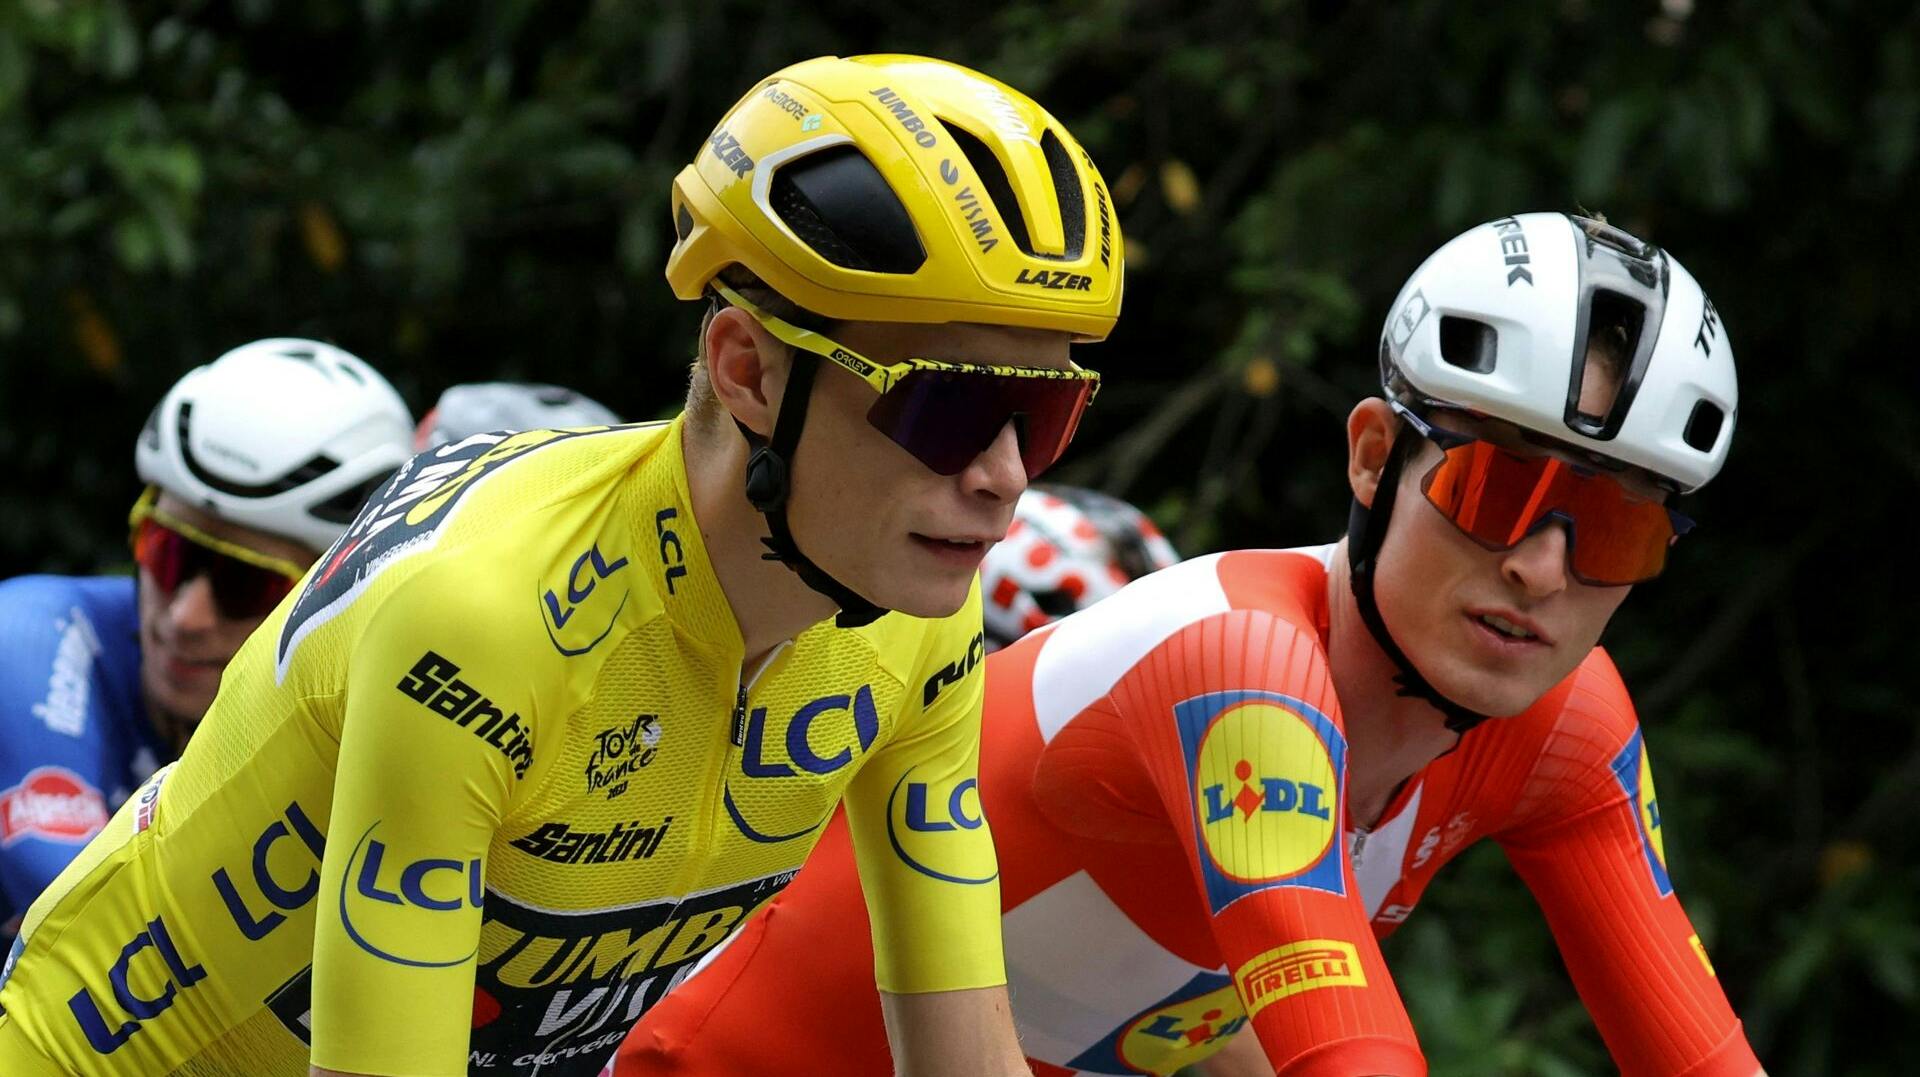 Til sommer får vi ikke glæden af at se både Mattias Skjelmose og Jonas Vingegaard i Tour de France. Skjellmose slår nu helt fast, at han dropper Touren.